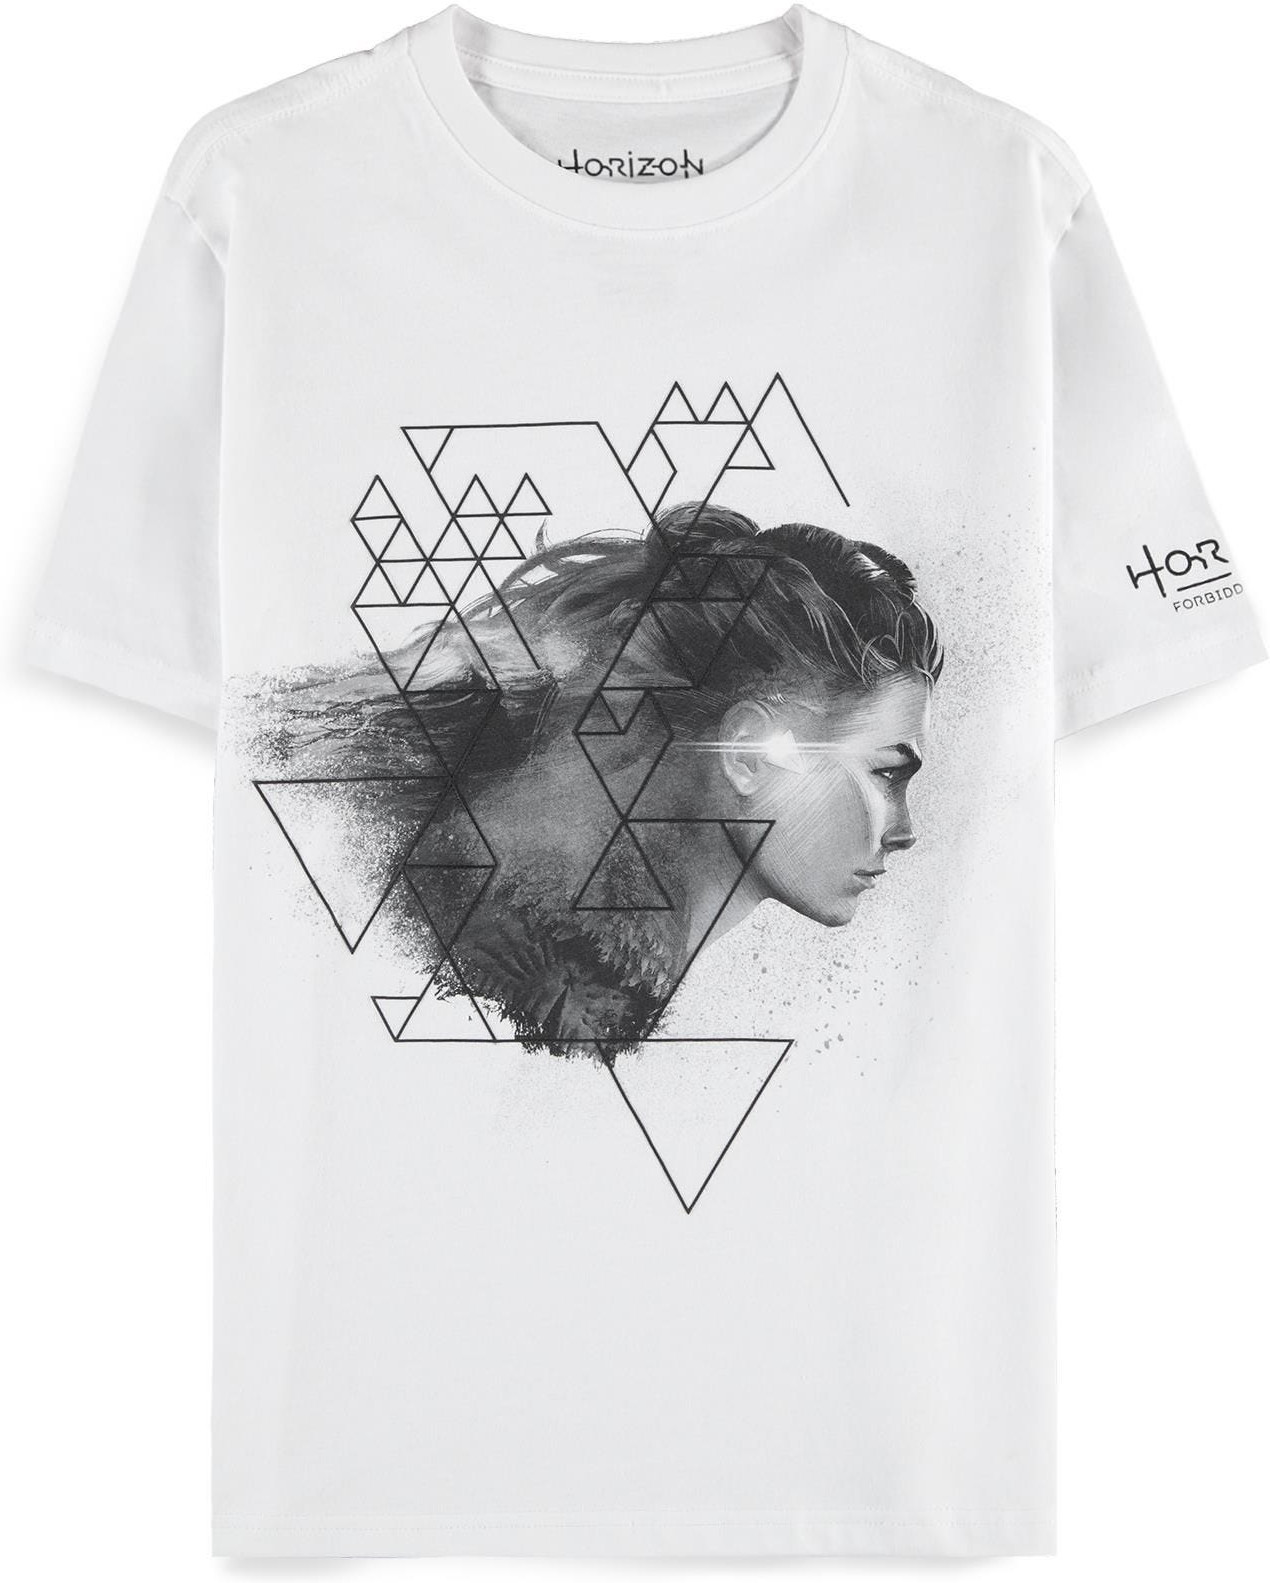 Horizon Forbidden West - Aloy - Women\s Short Sleeved T-shirt